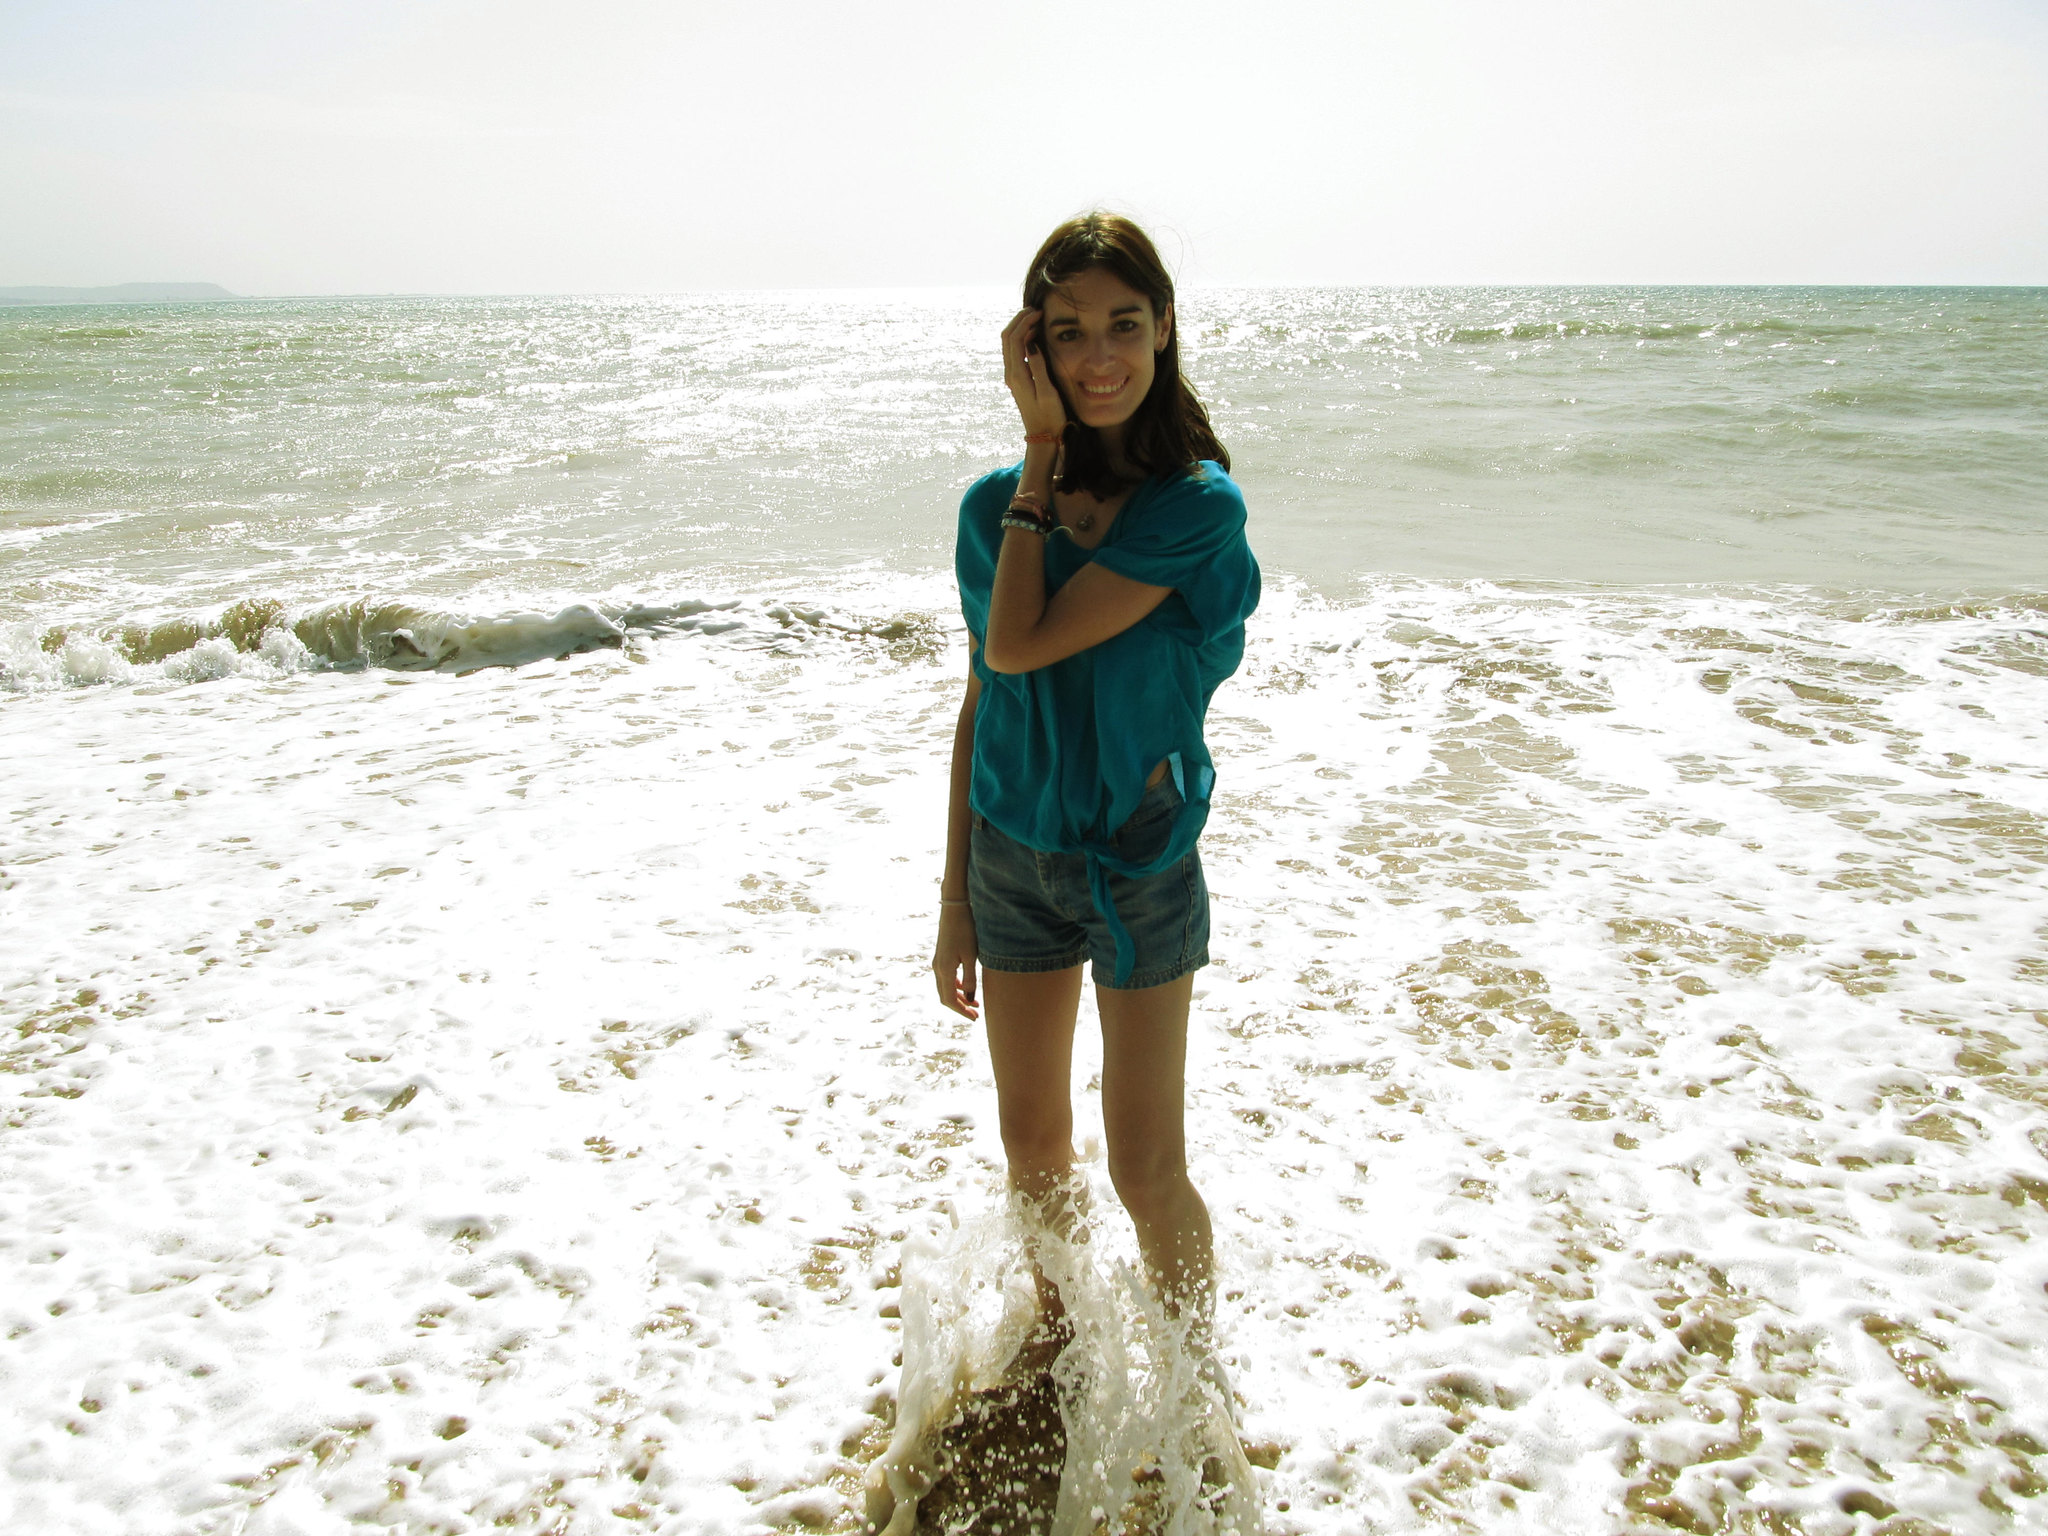 Eine junge Frau lächelt, während sie an einem Strand im Wasser steht | Quelle: Flickr